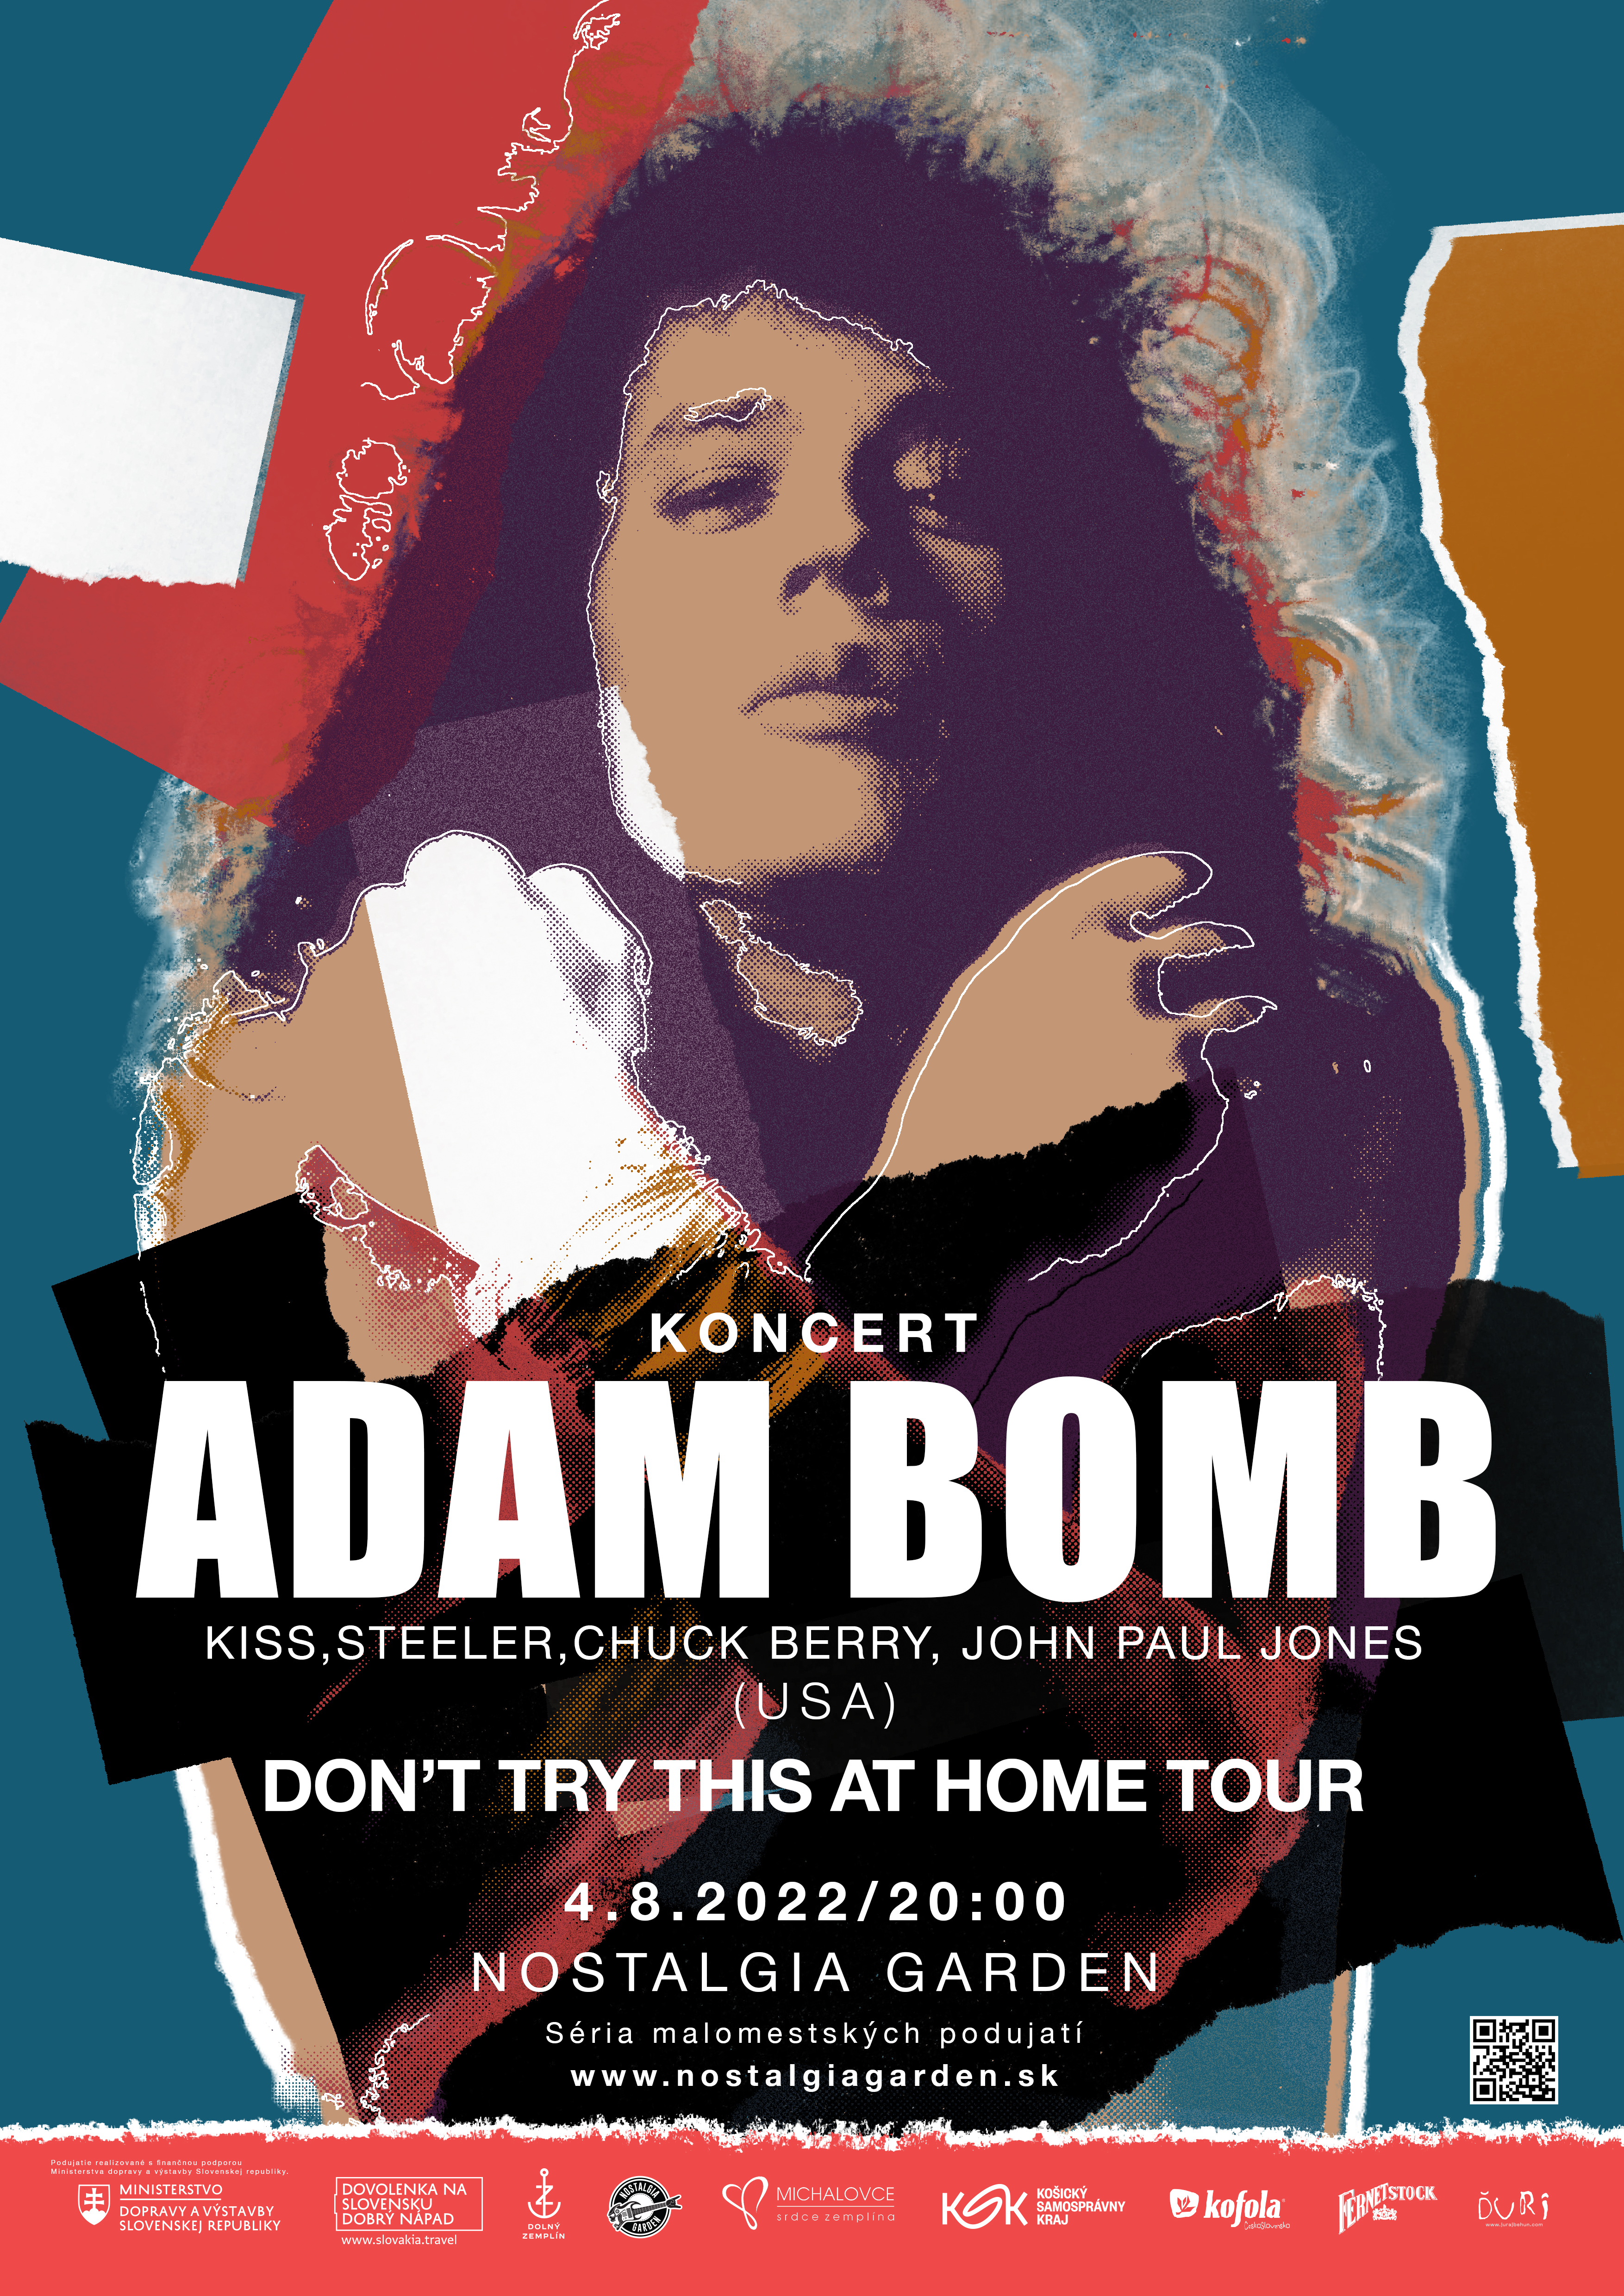 Plagát pre Adam Bomb